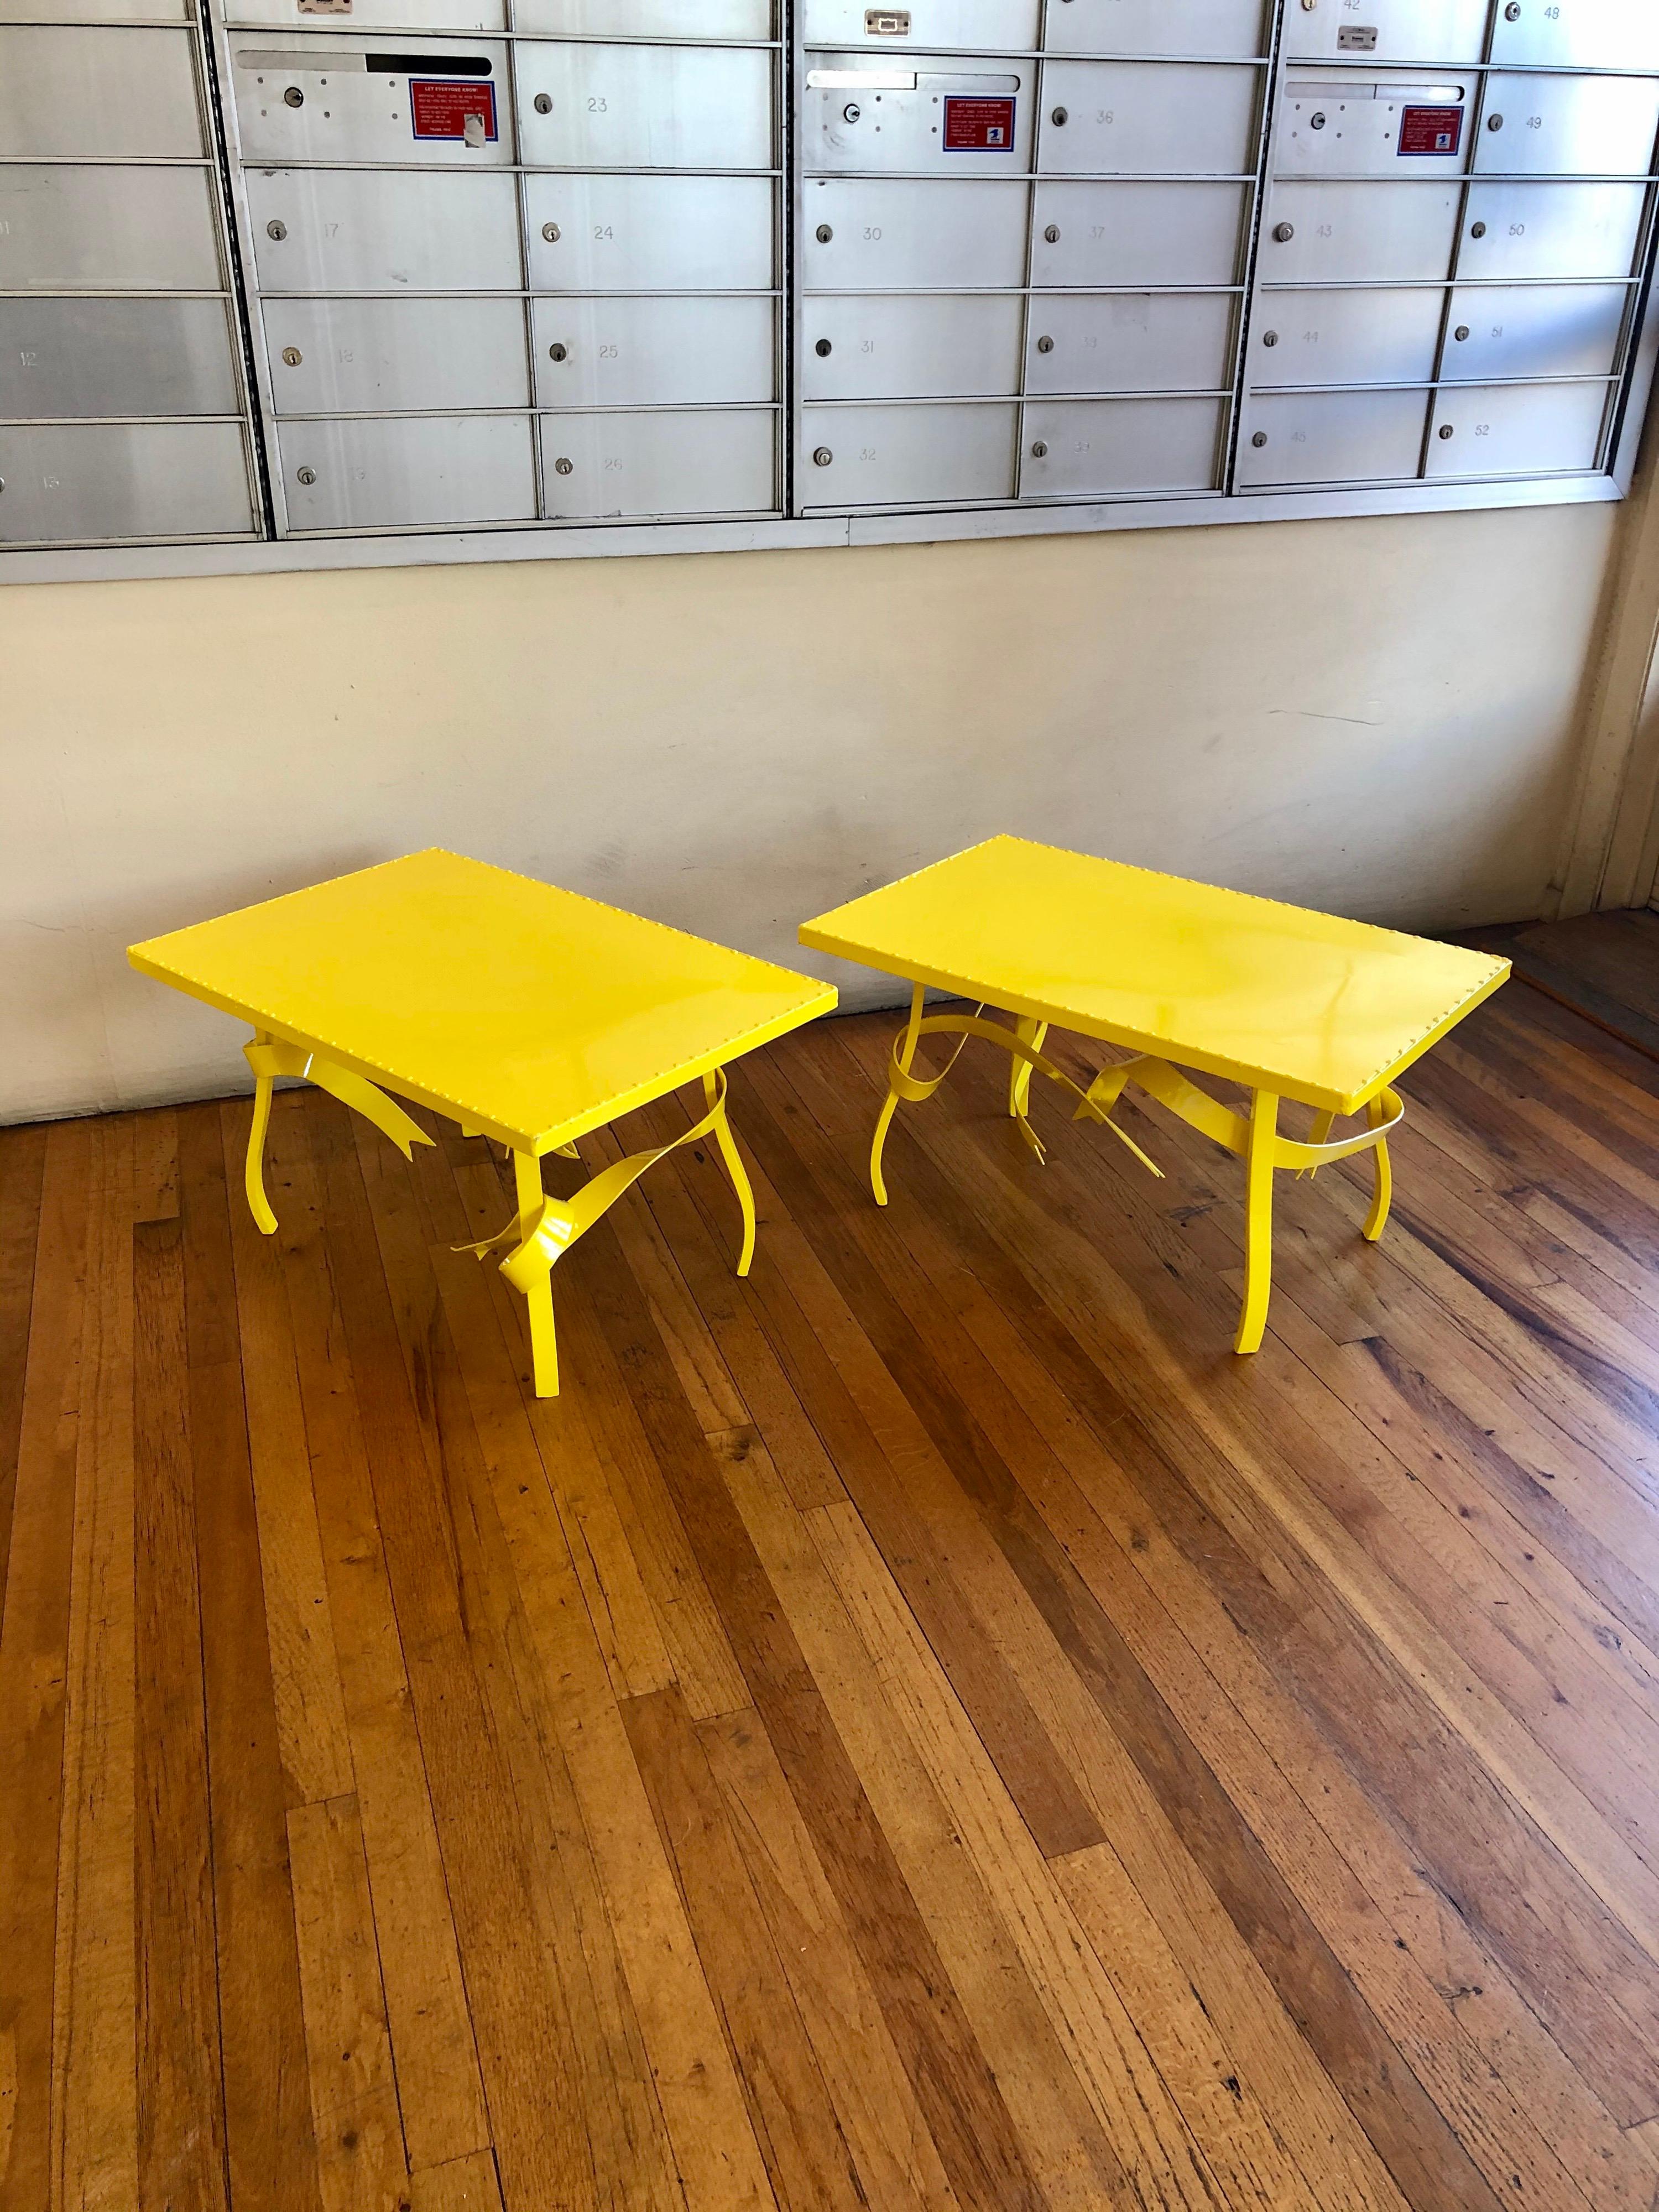 Superbes et rares tables d'extrémité fabriquées sur mesure dans les années 1980 à San Diego en Californie. Nous les avons fraîchement sablées et recouvertes d'une peinture en poudre jaune, ces deux tables peuvent être utilisées à l'intérieur ou à